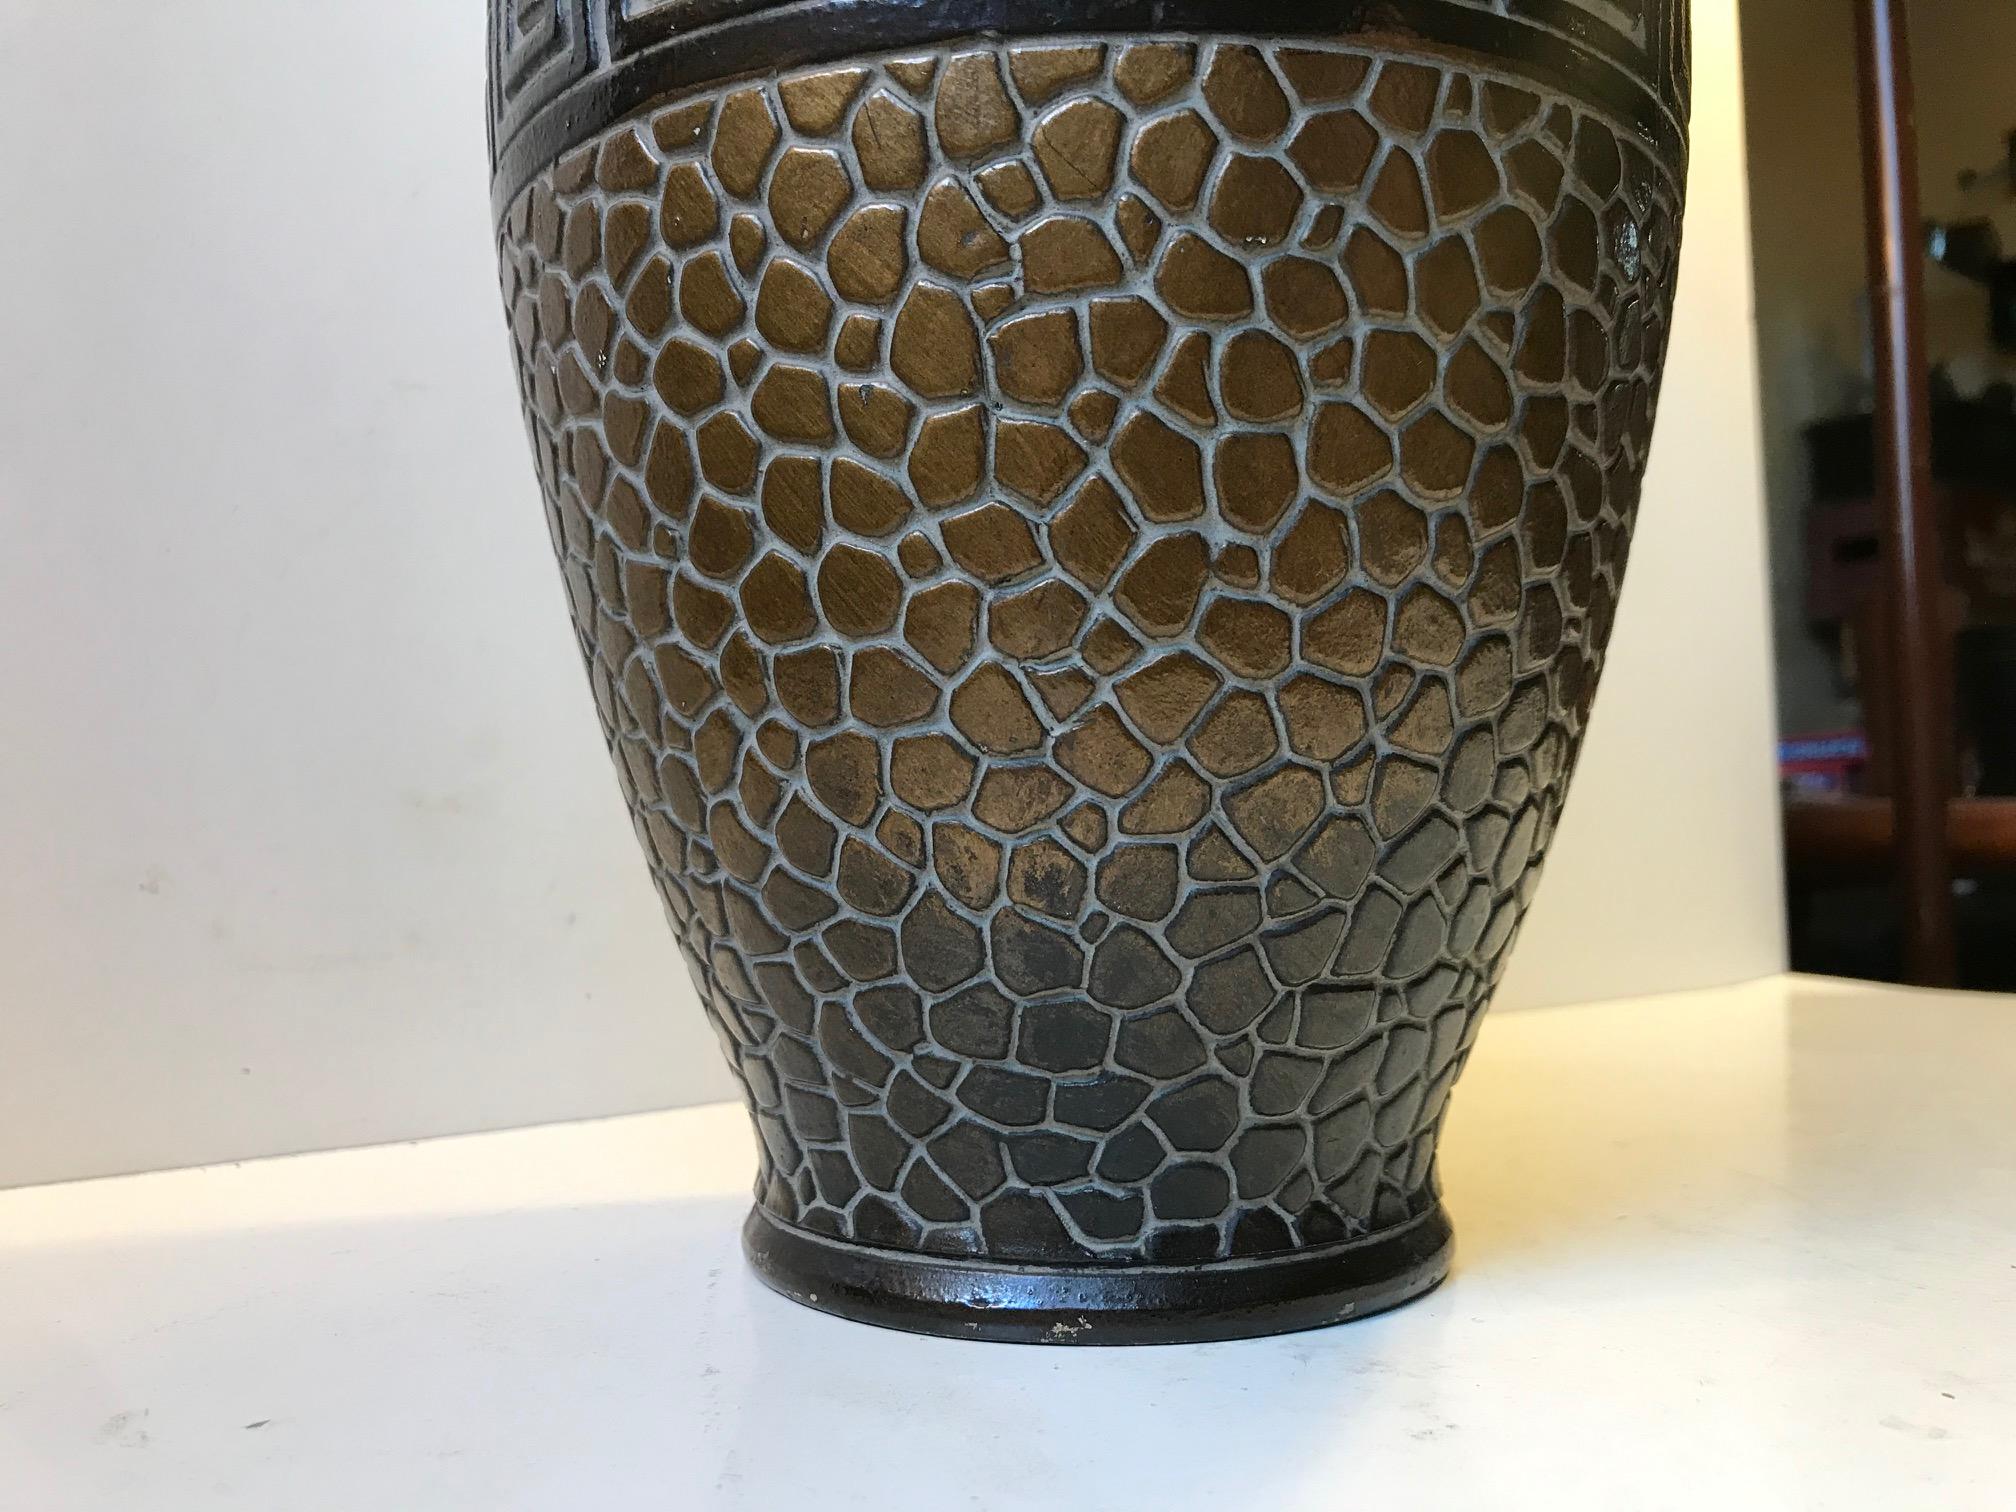 Grand et décoratif vase allemand avec un grand style Art Déco. Détails architecturaux, imitation de peau de serpent ou de carreaux et glaçure bronze. Il présente une marque non identifiée sous sa base.